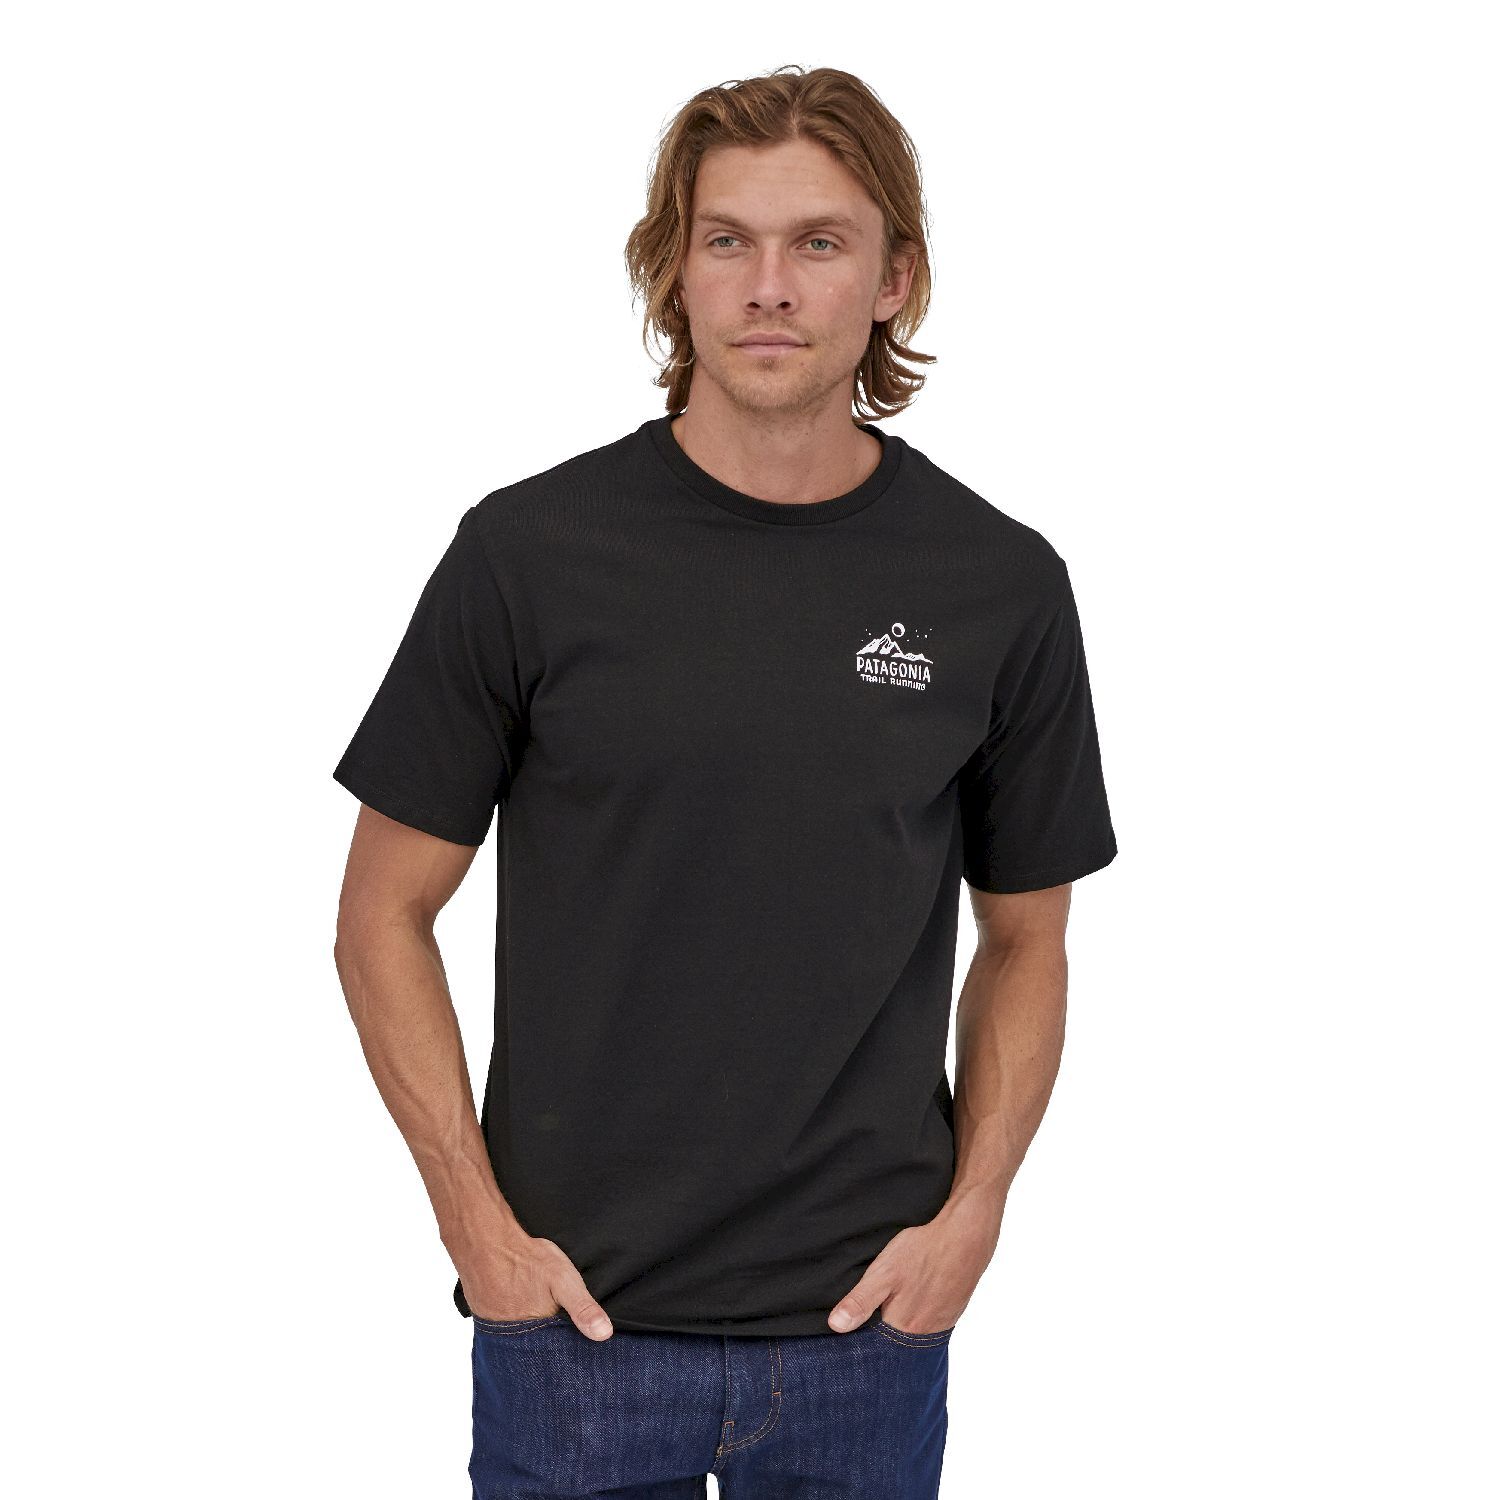 Patagonia Ridgeline Runner Responsibili-Tee - T-shirt - Heren